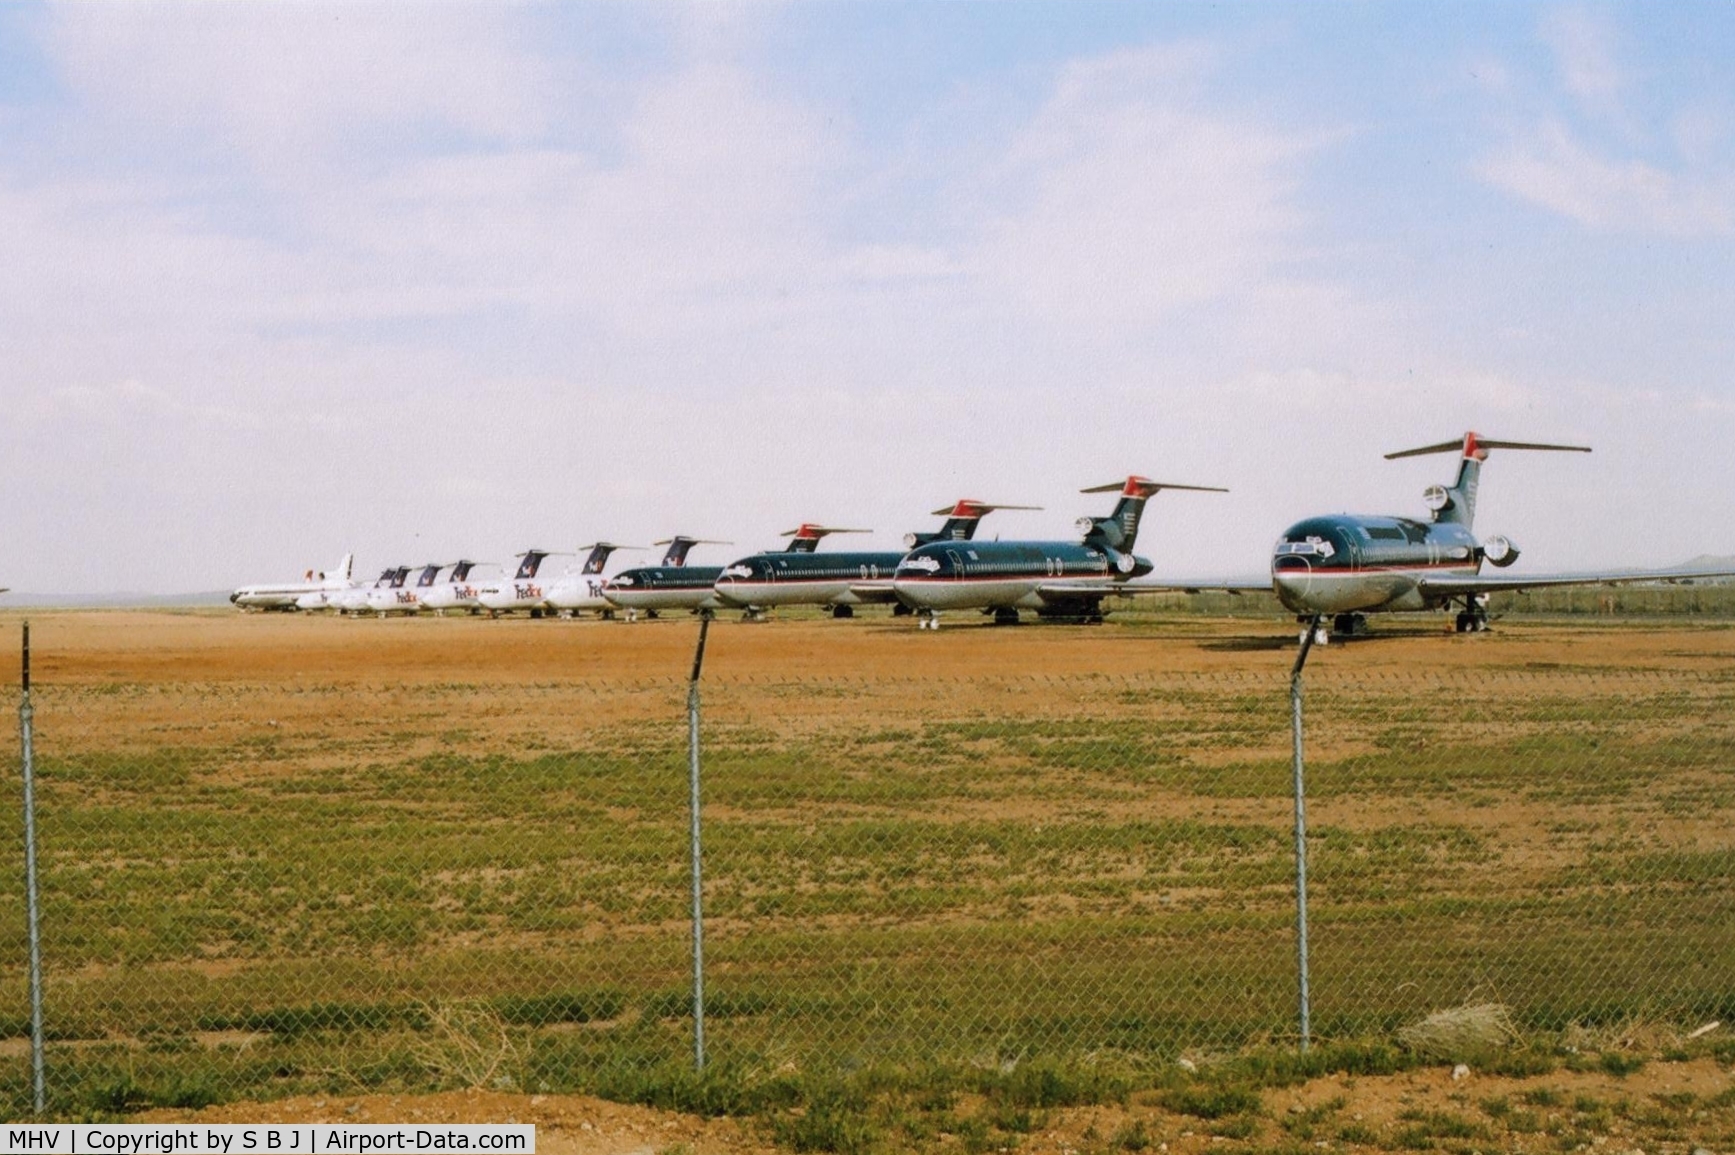 Mojave Airport (MHV) - Still more aircraft at Mojave.